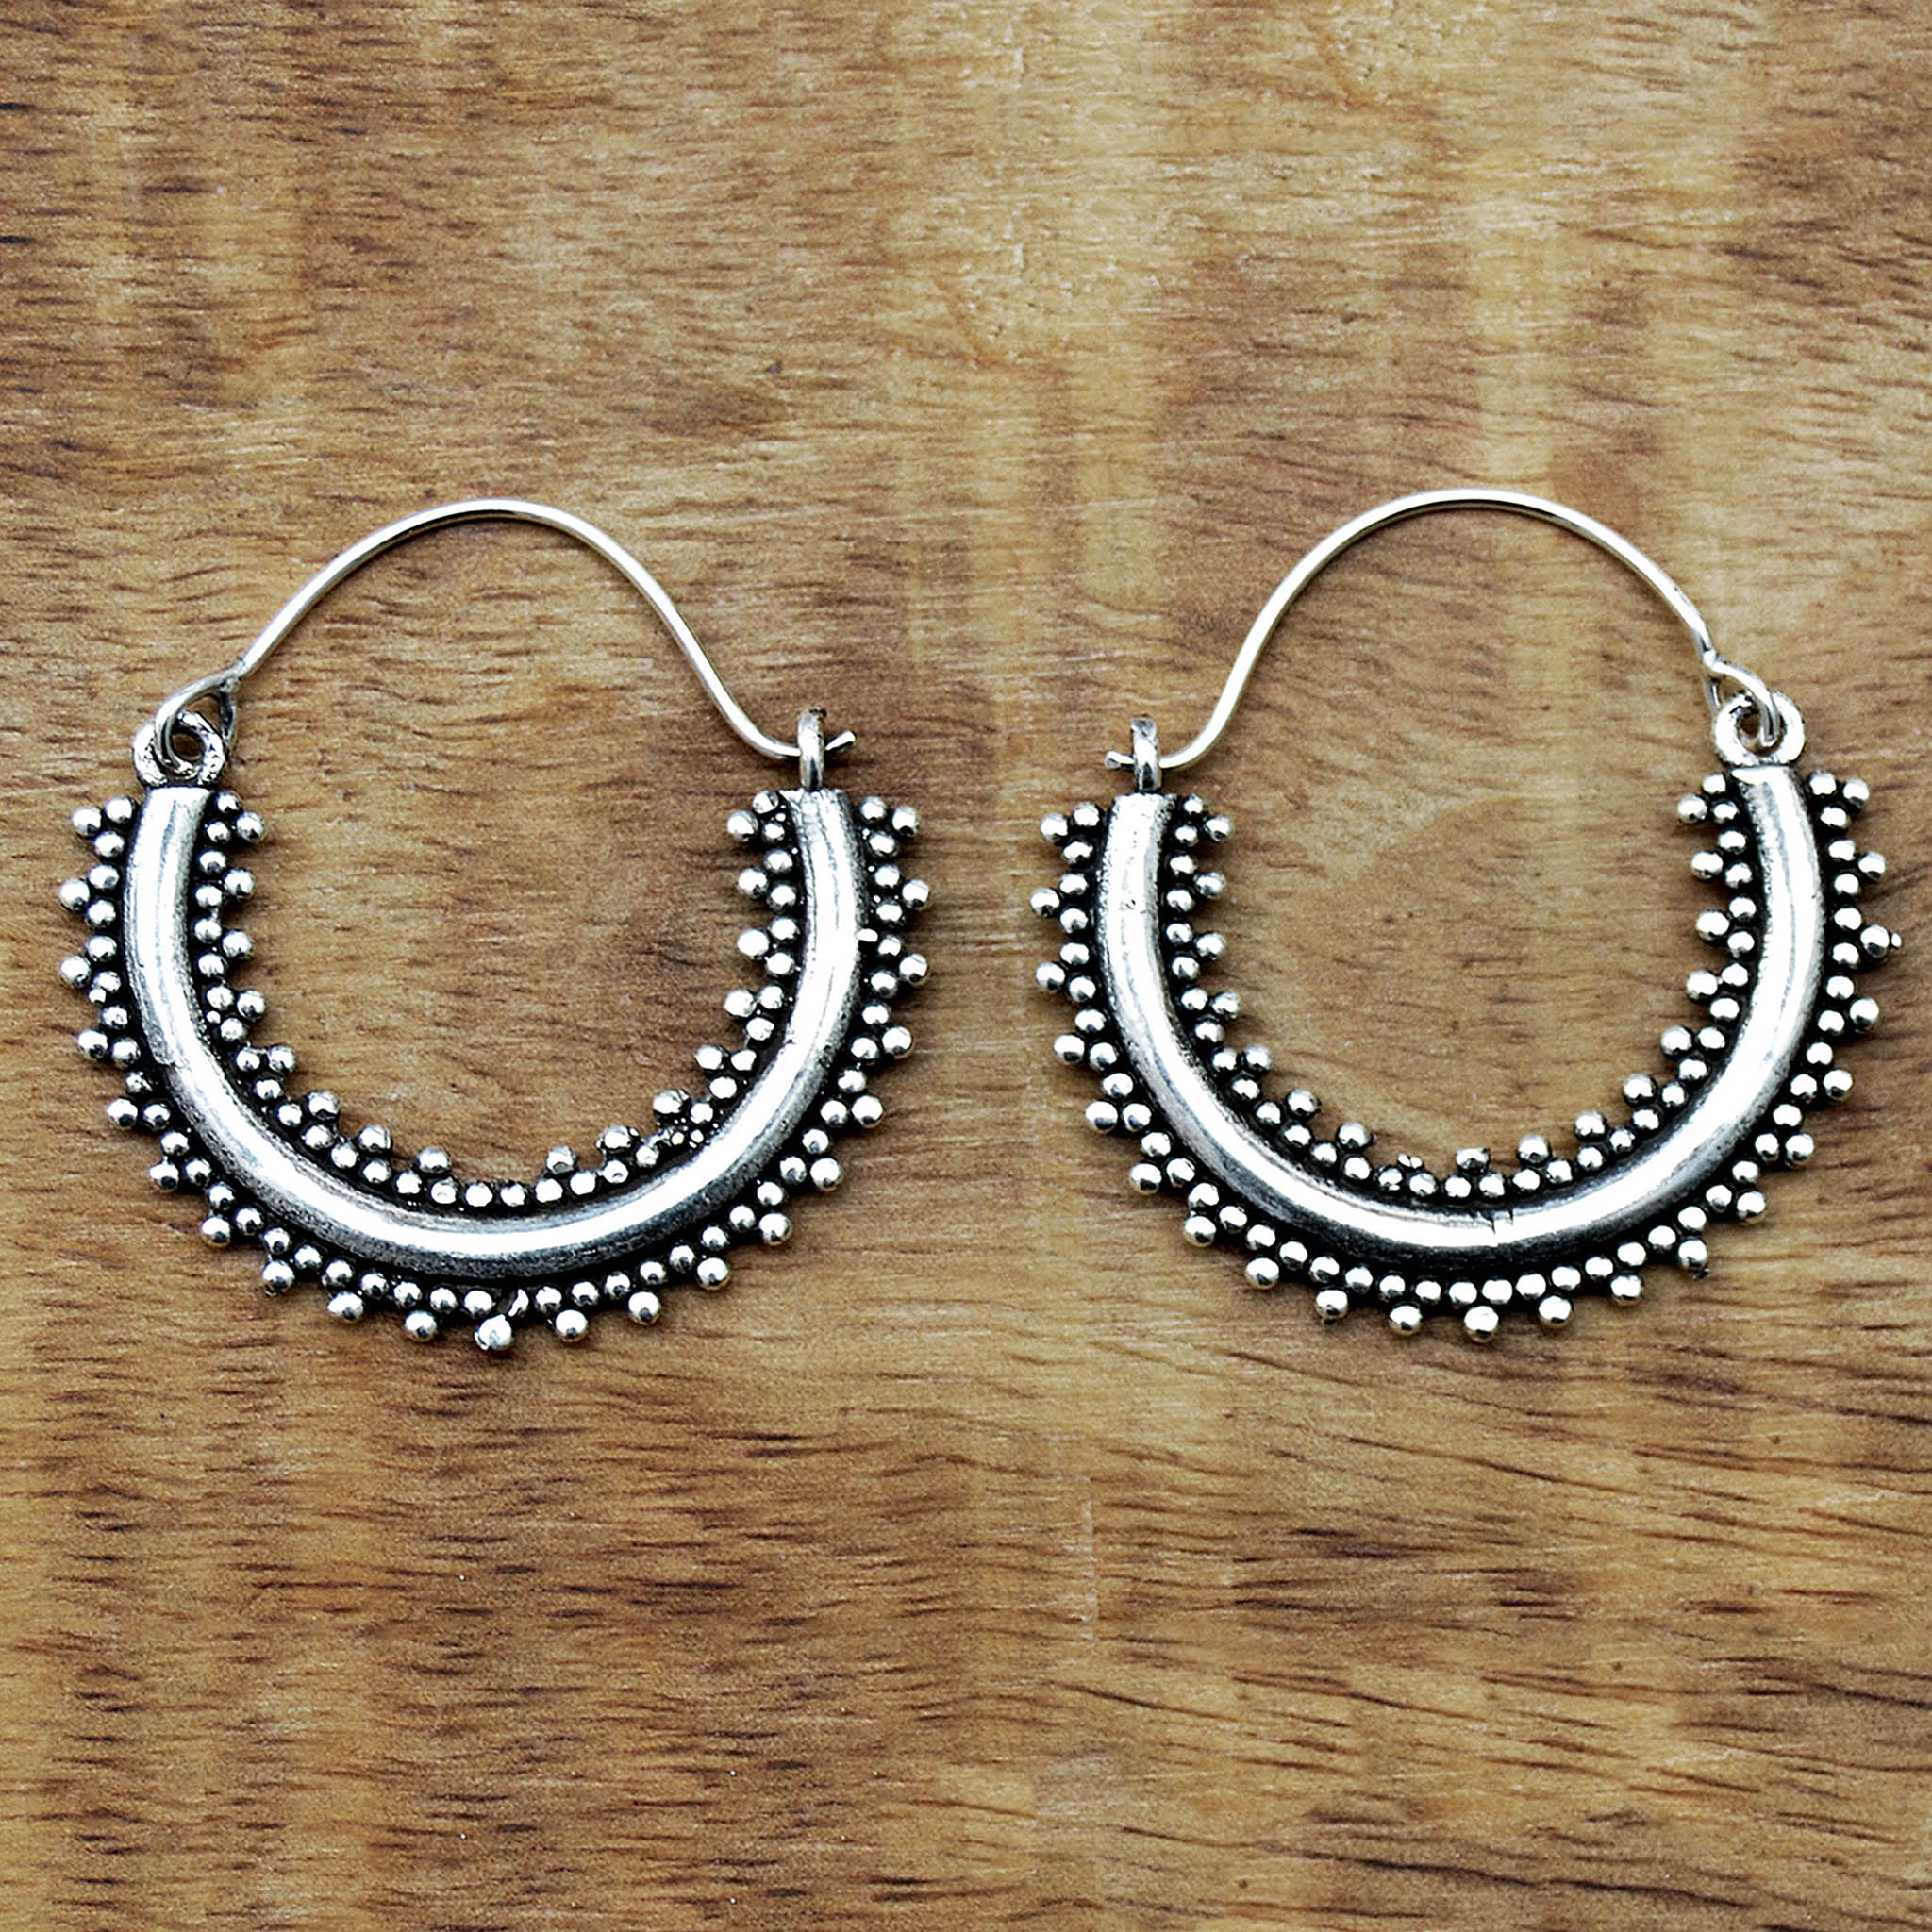 Indian gypsy earrings